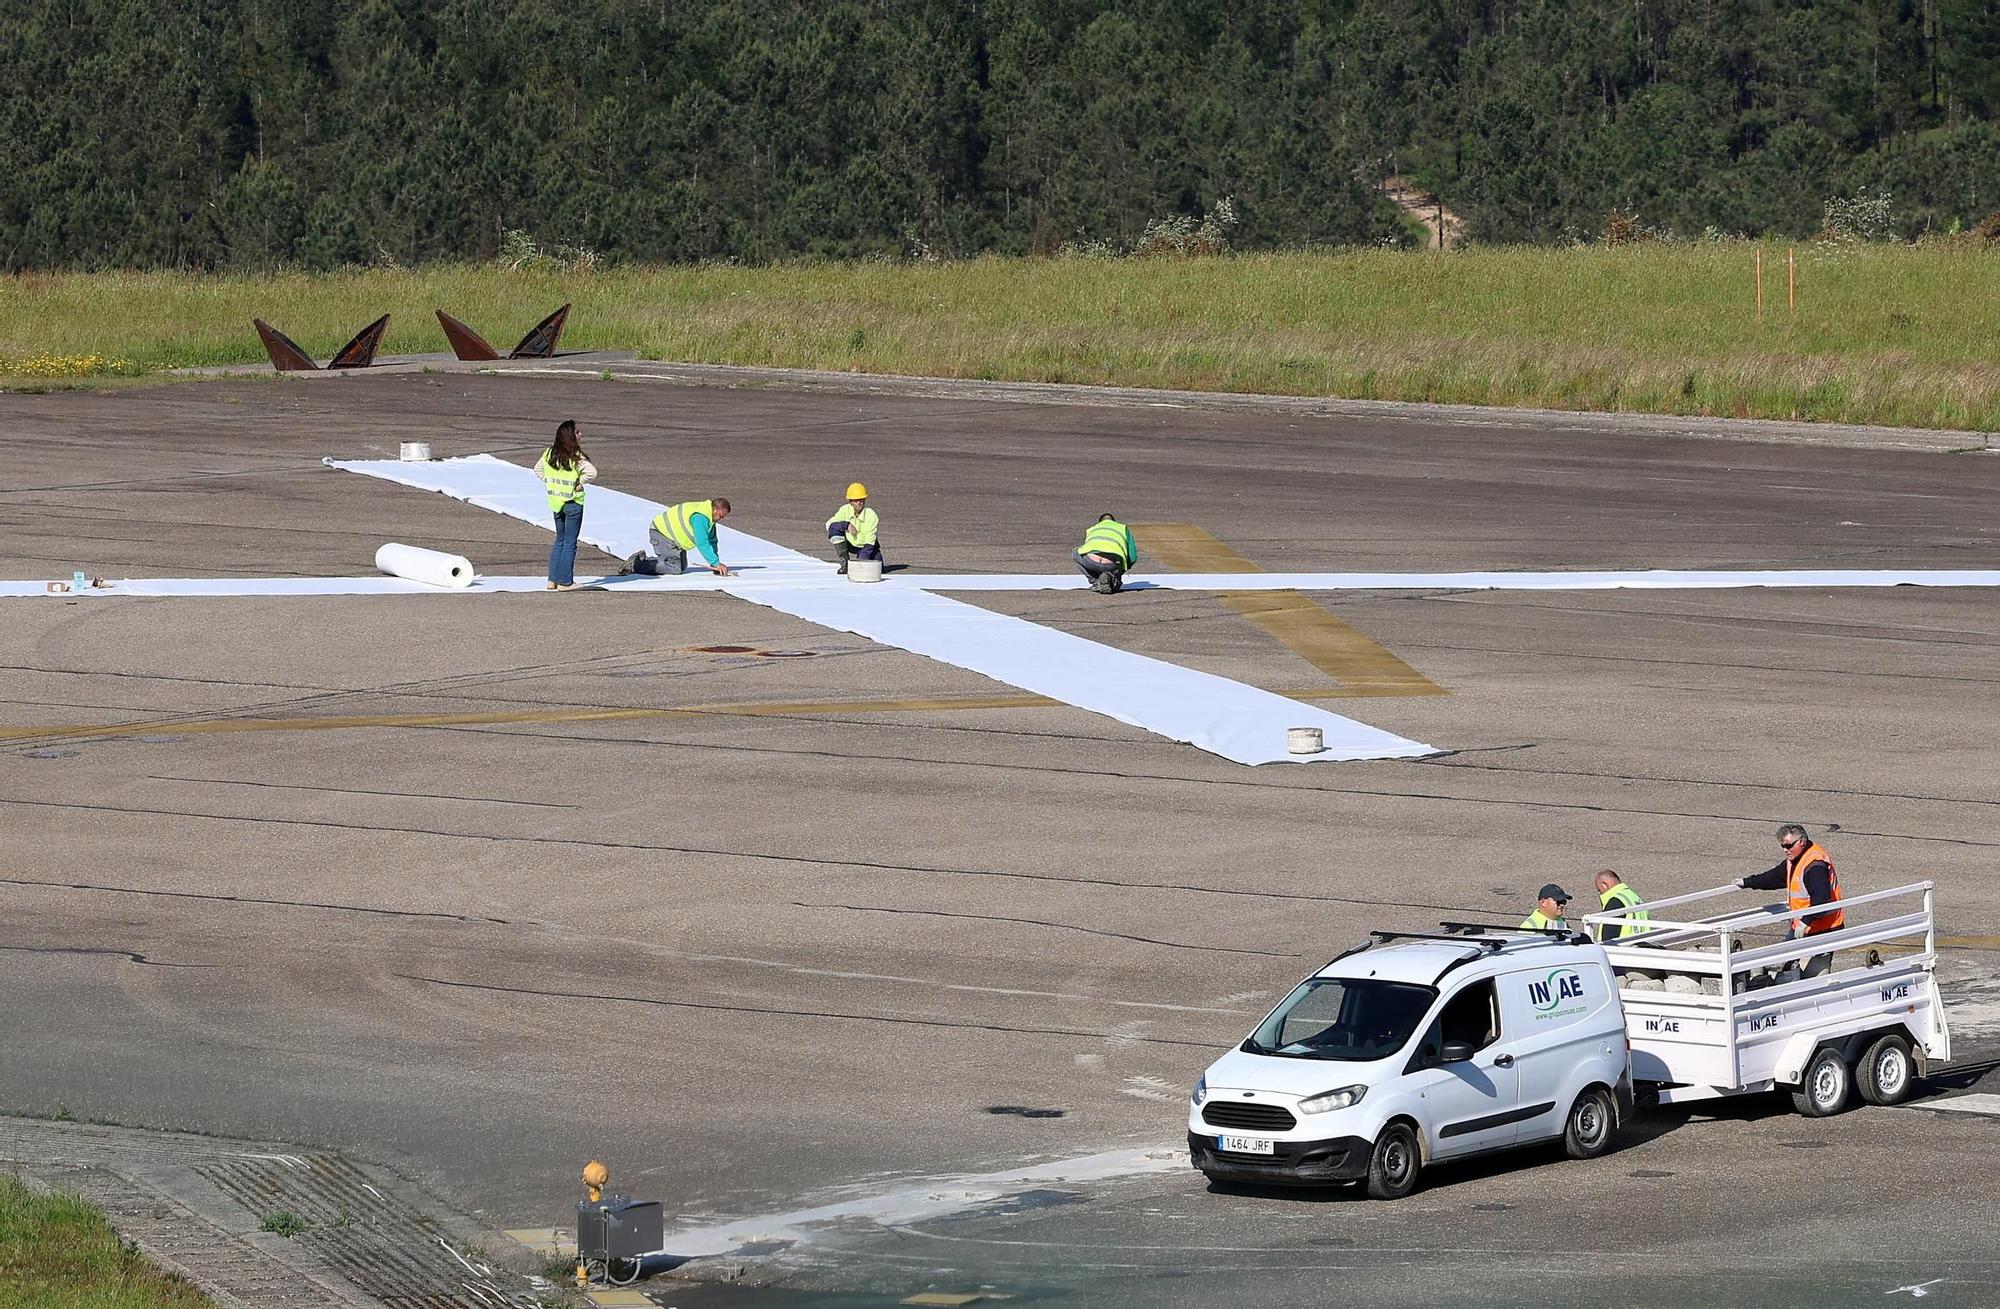 Comienzan las obras en la pista del aeropuerto de Vigo